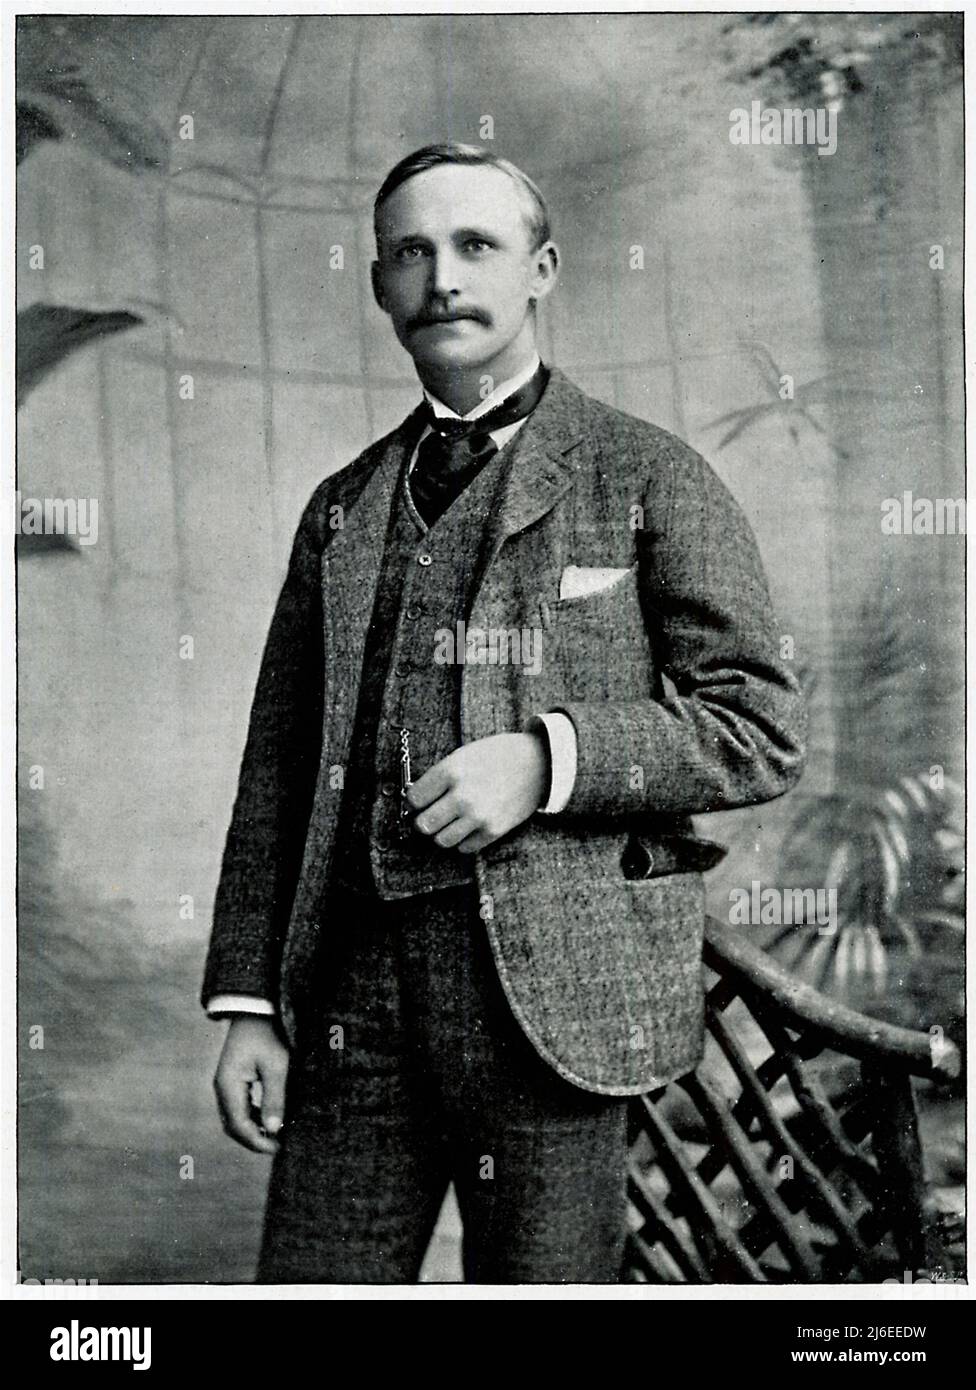 JH Taylor, 1895 retrato del golfista profesional inglés de Devon, campeón abierto 5 veces, uno del gran triunfo de los golfistas campeones, y arquitecto notable del campo de golf Foto de stock